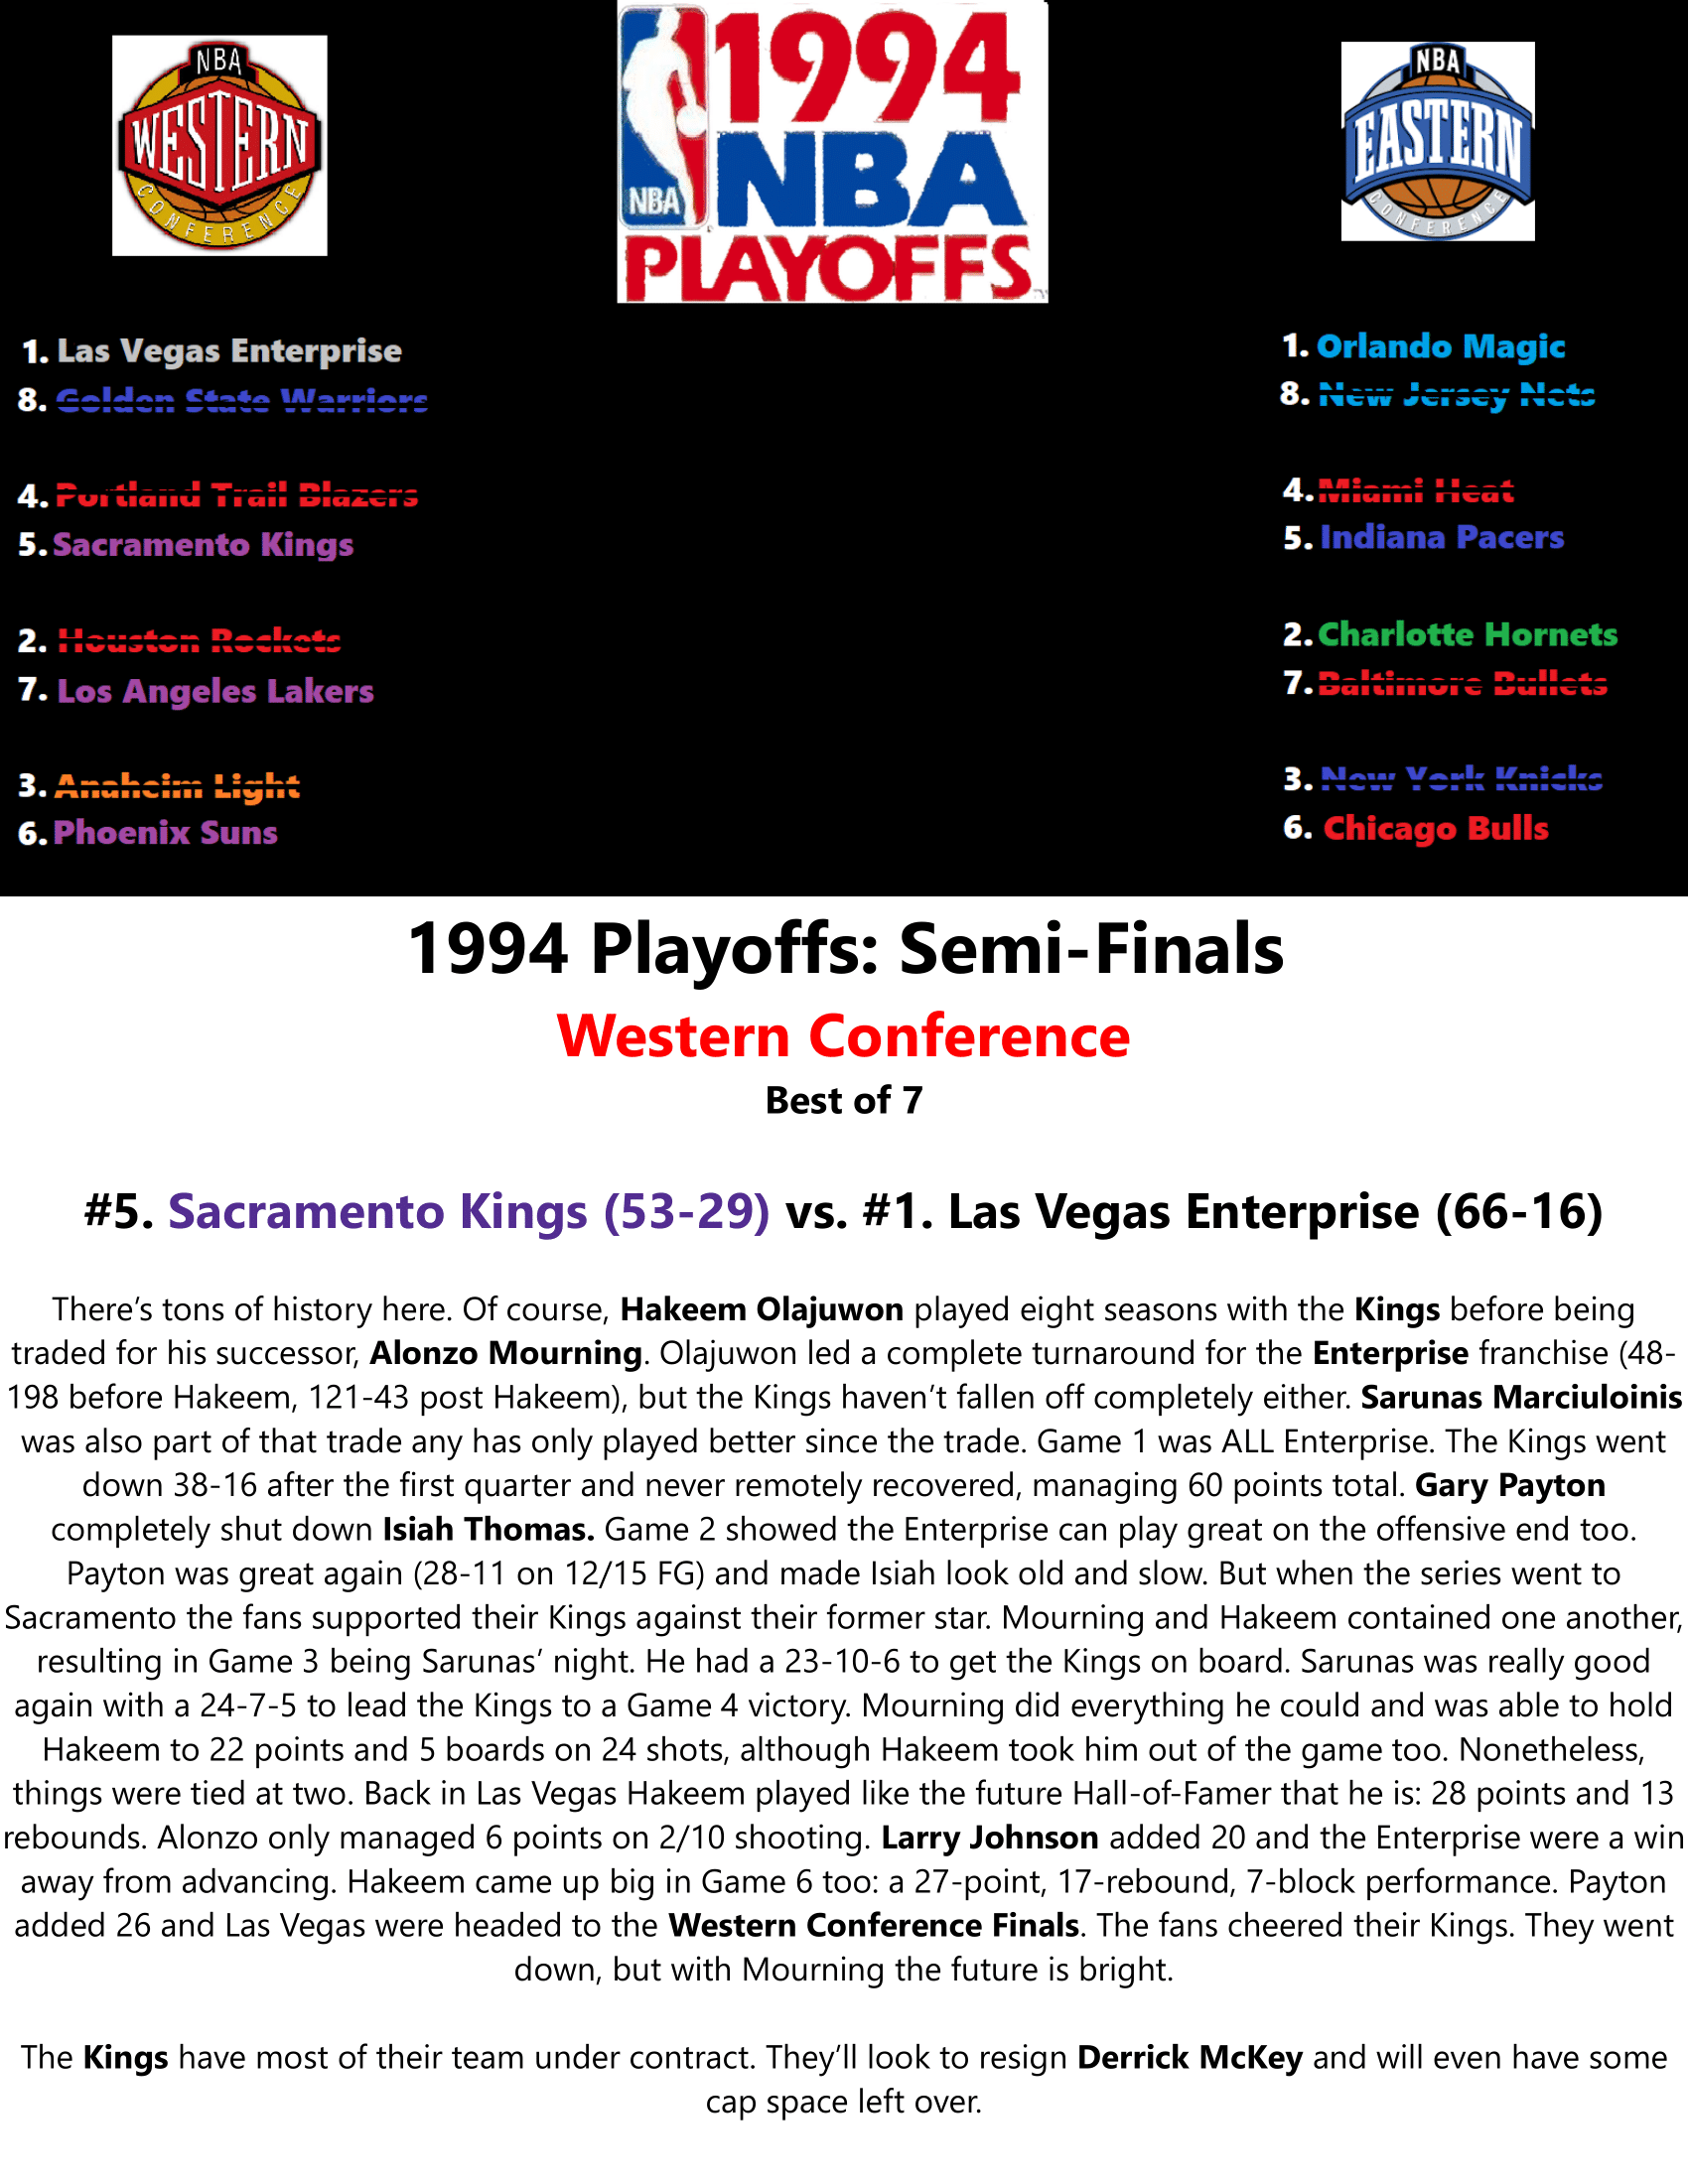 93-94-Part-5-NBA-Playoffs-15.png